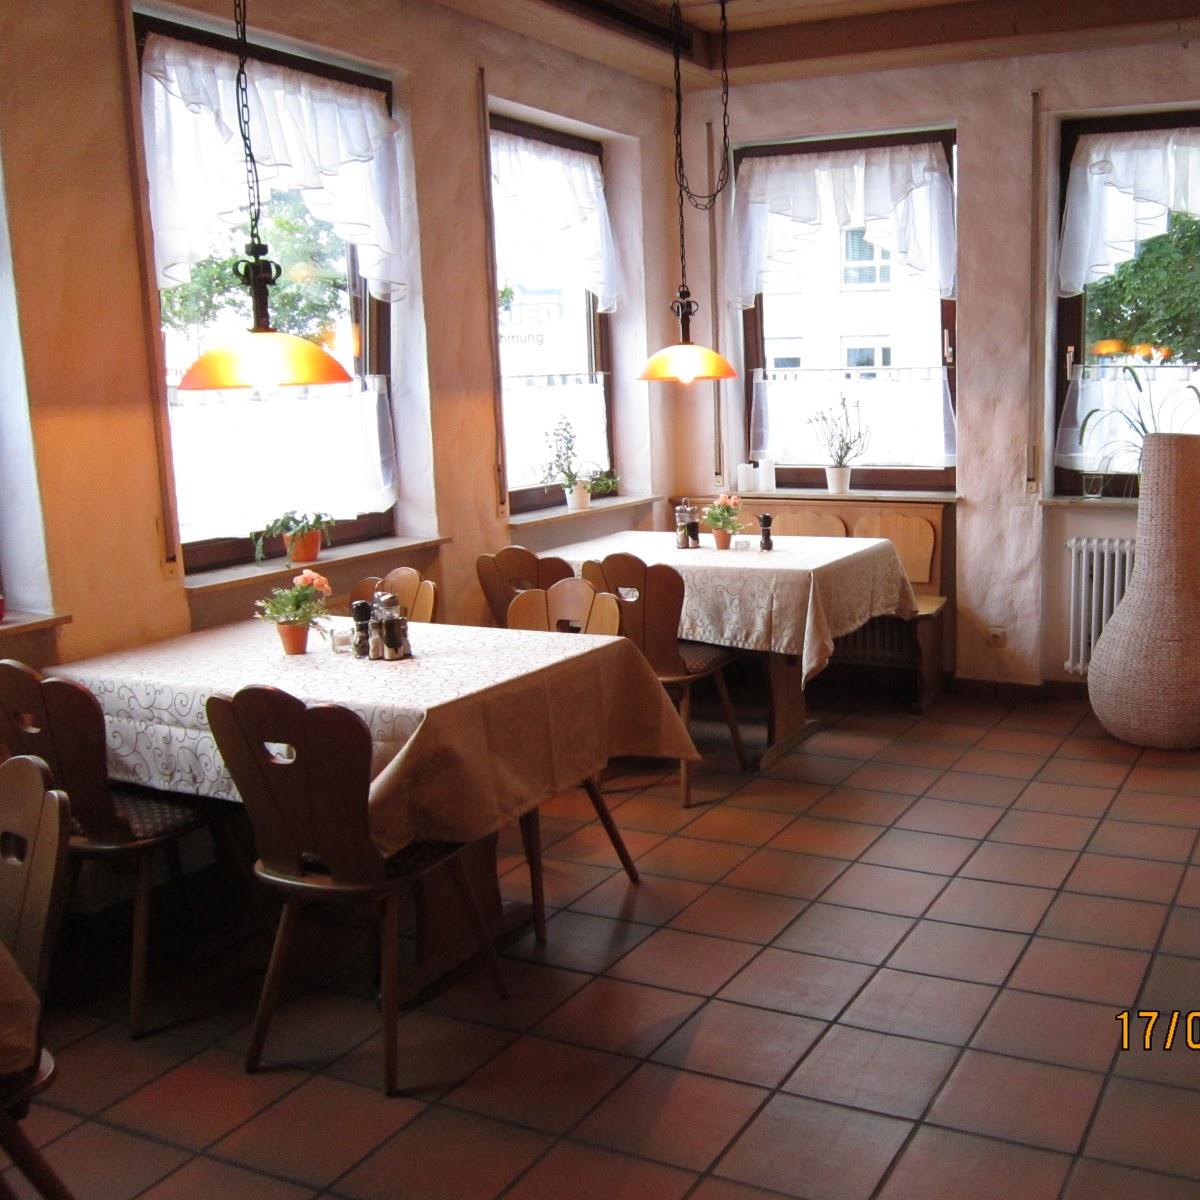 Restaurant "EatHappy" in  Umkirch